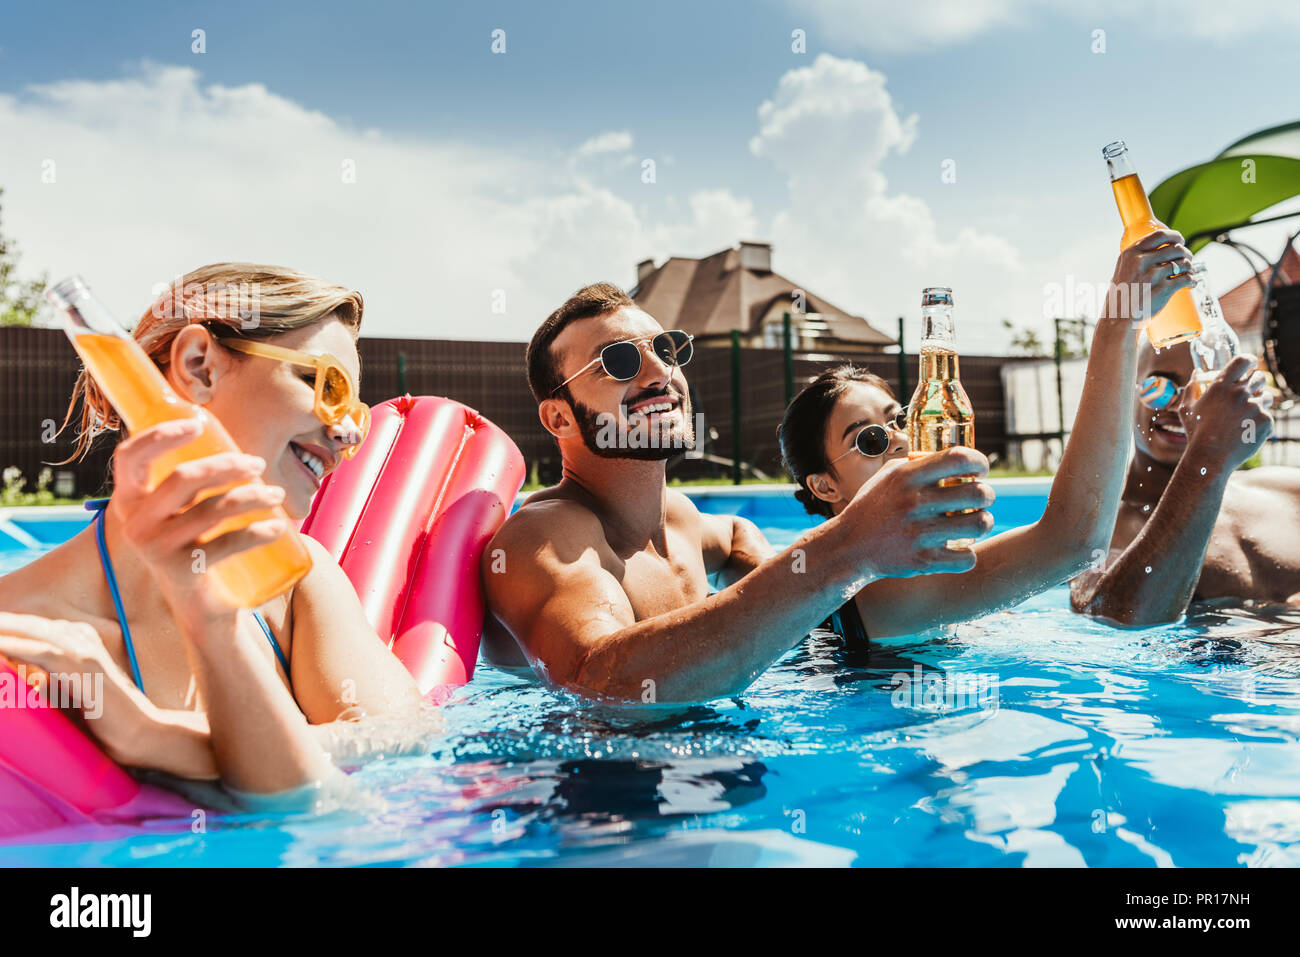 Multikulturelle Freunde mit Flaschen Bier im Pool mit aufblasbaren Matratze  Stockfotografie - Alamy